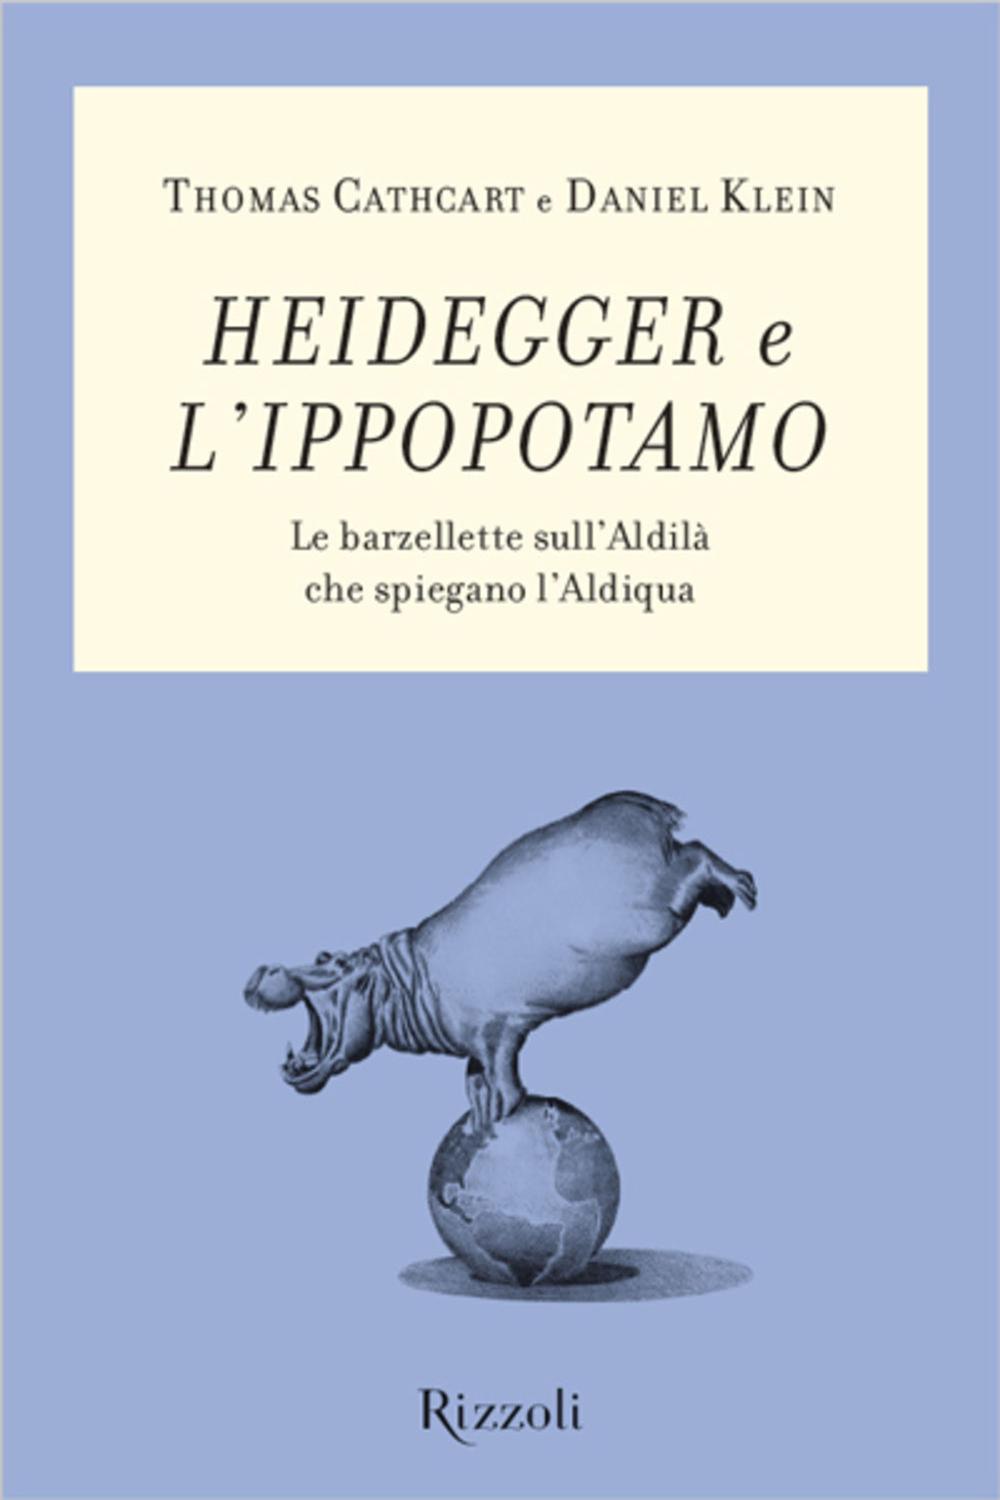 Heidegger e l'ippopotamo - Thomas Cathcart, Daniel Klein